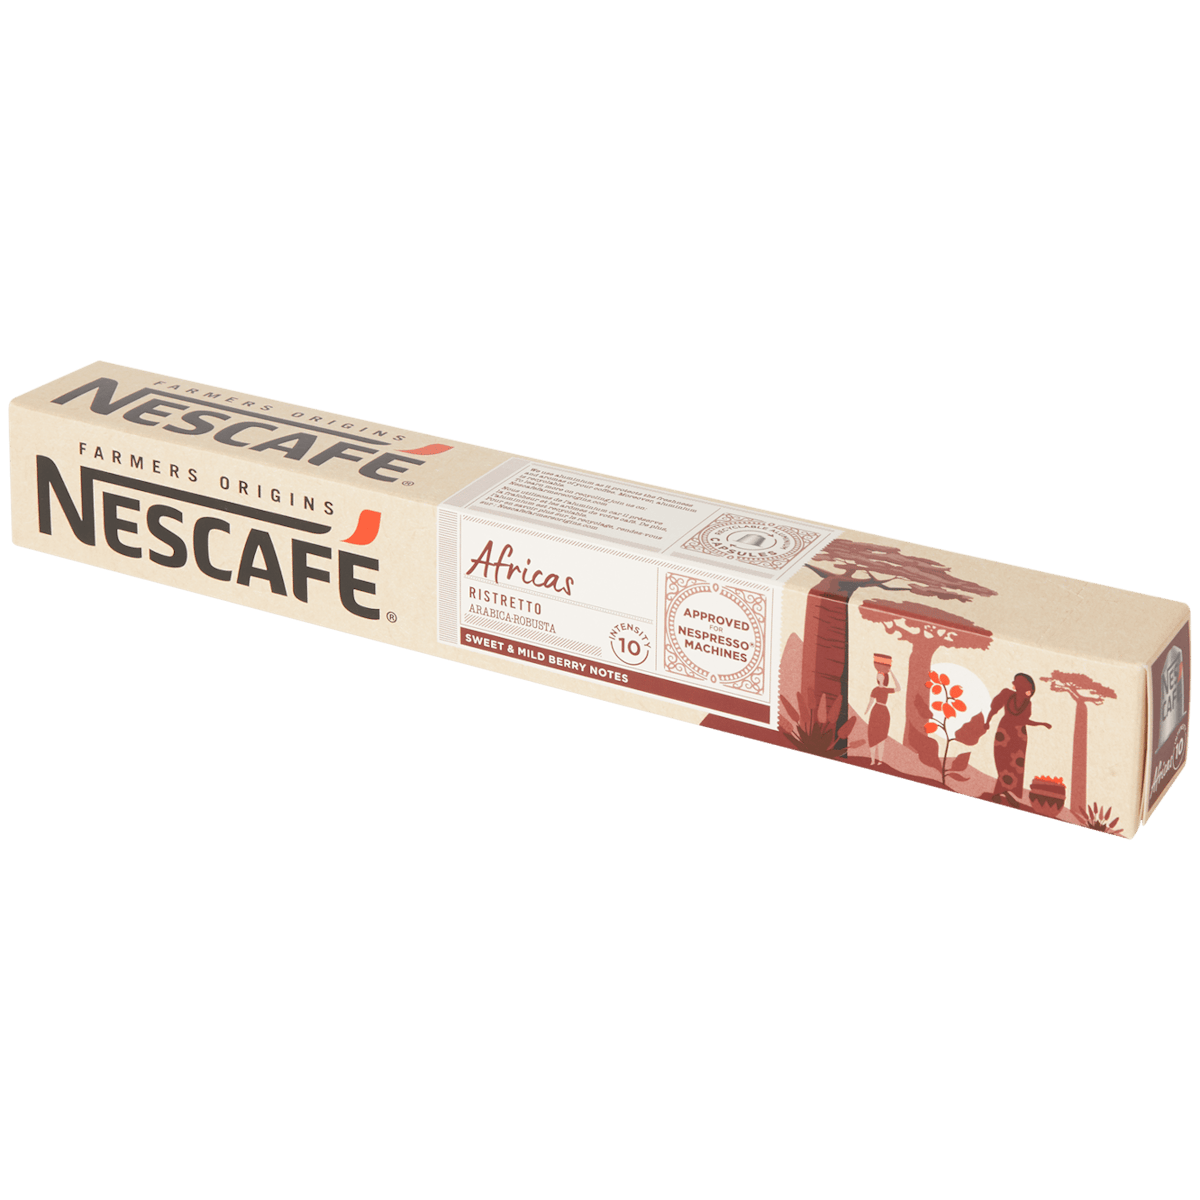 Nescafé Farmers Origins koffiecapsules Africas Ristretto